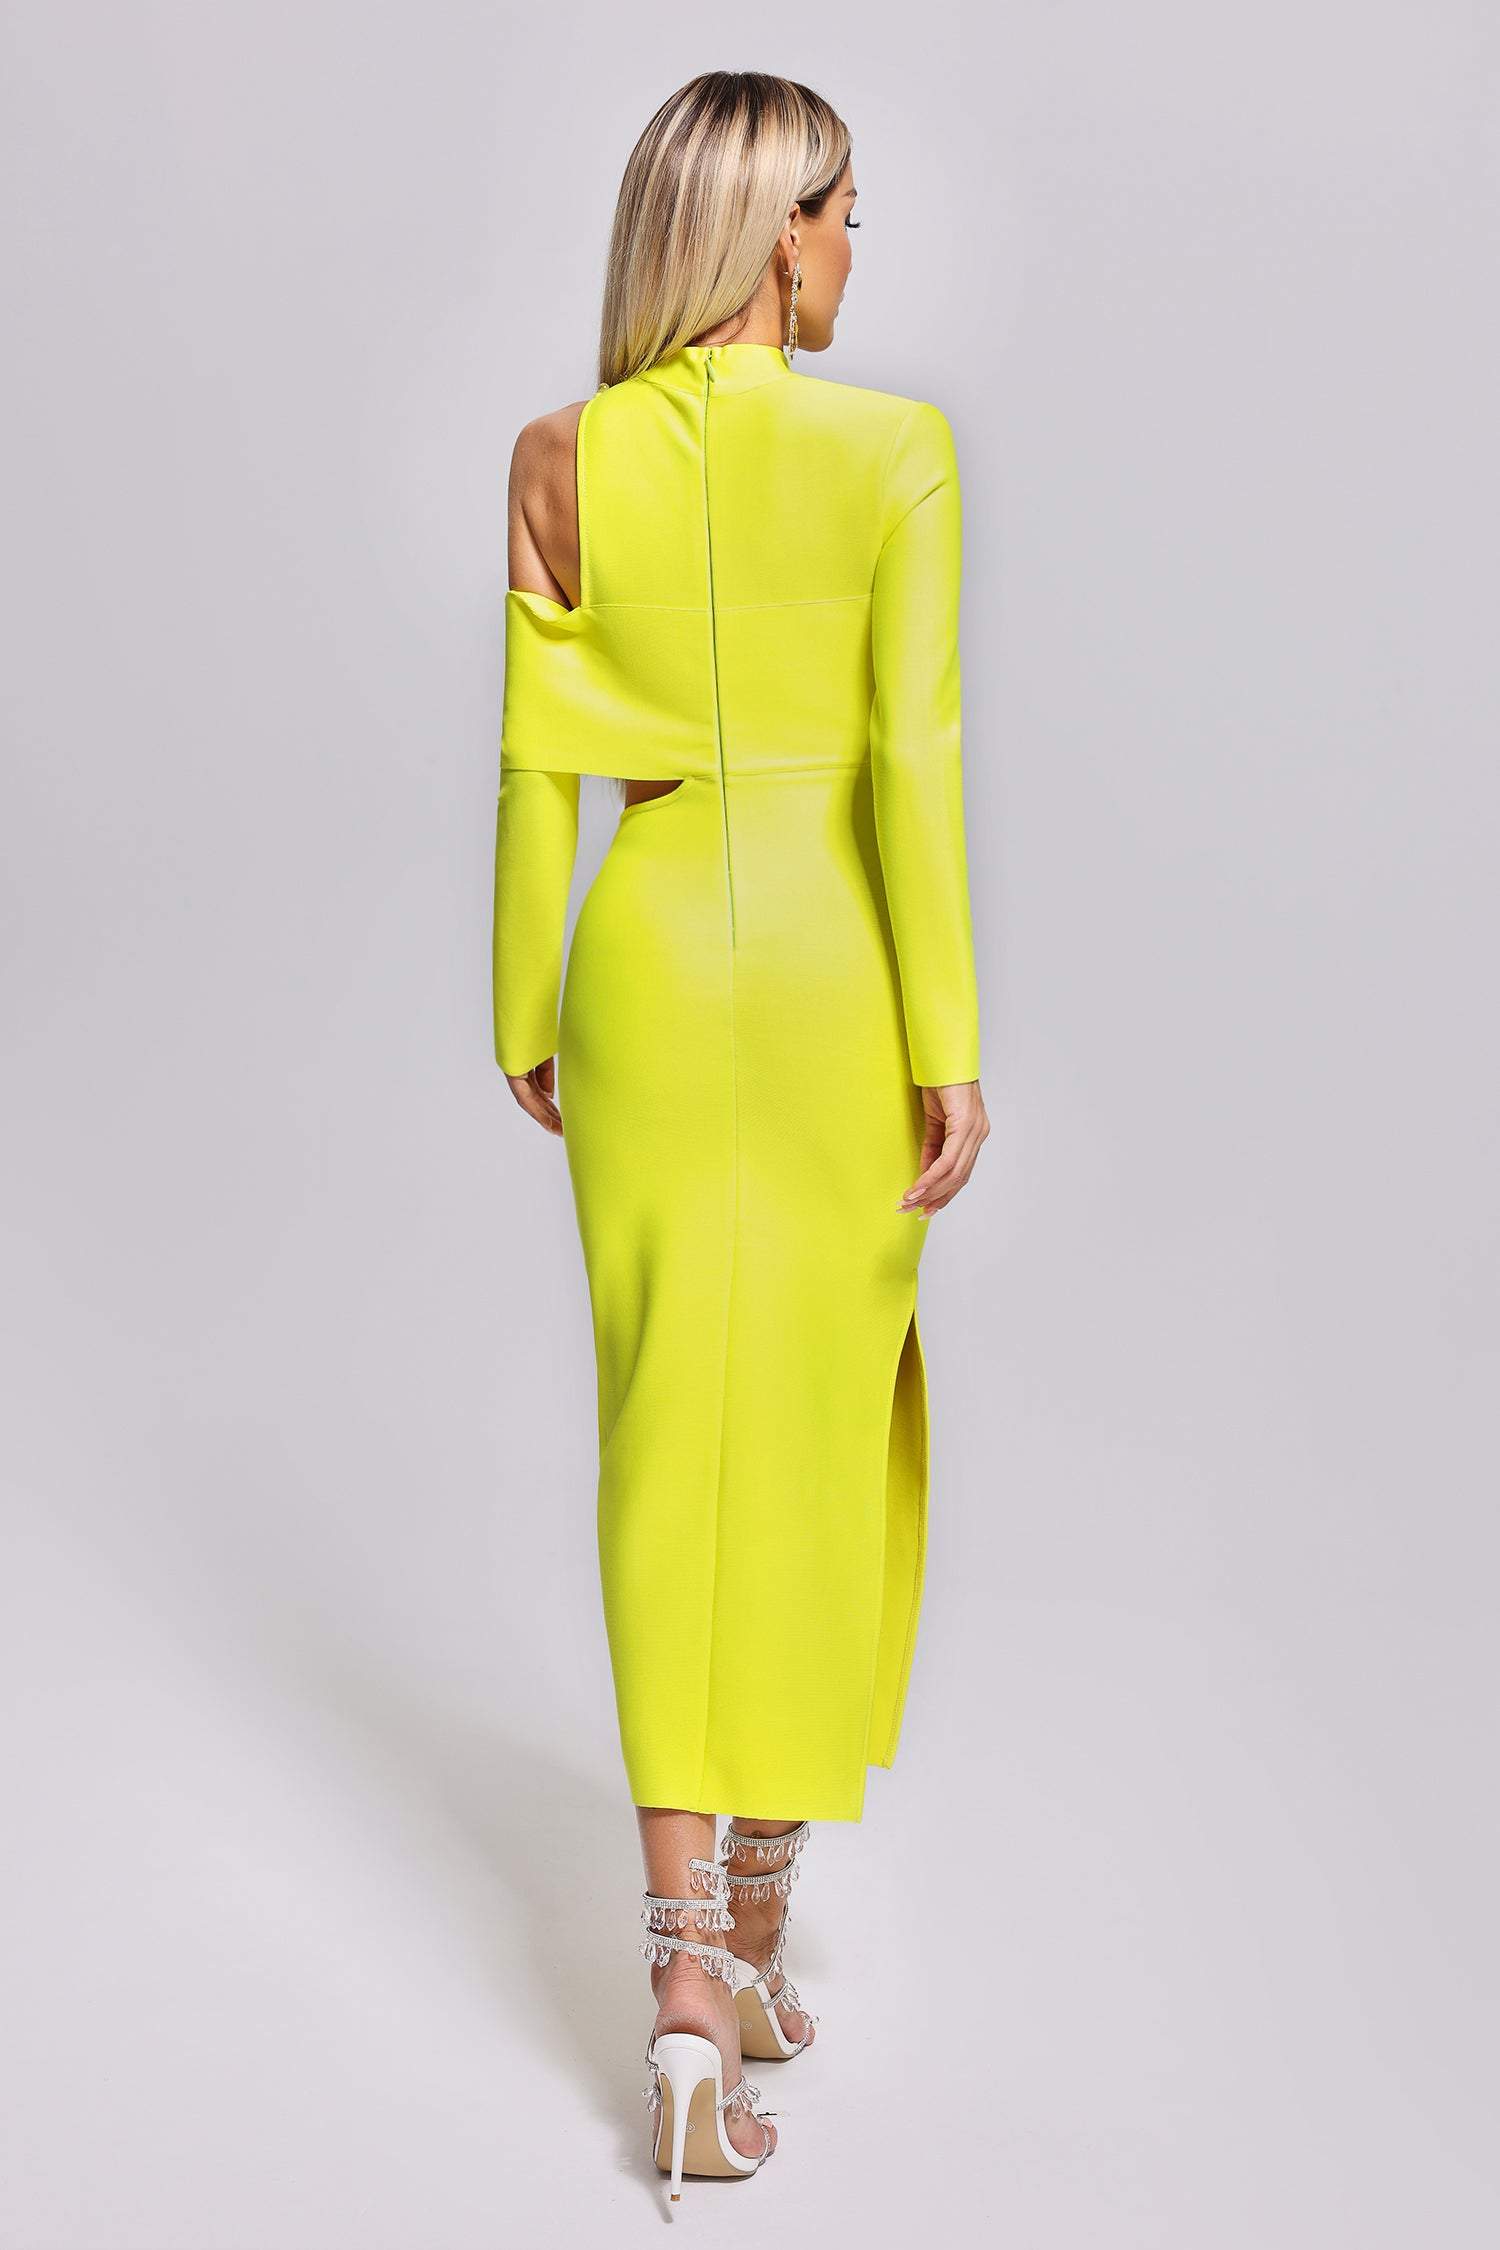 Zalca Cutout Maxi Bandage Dress - Yellow